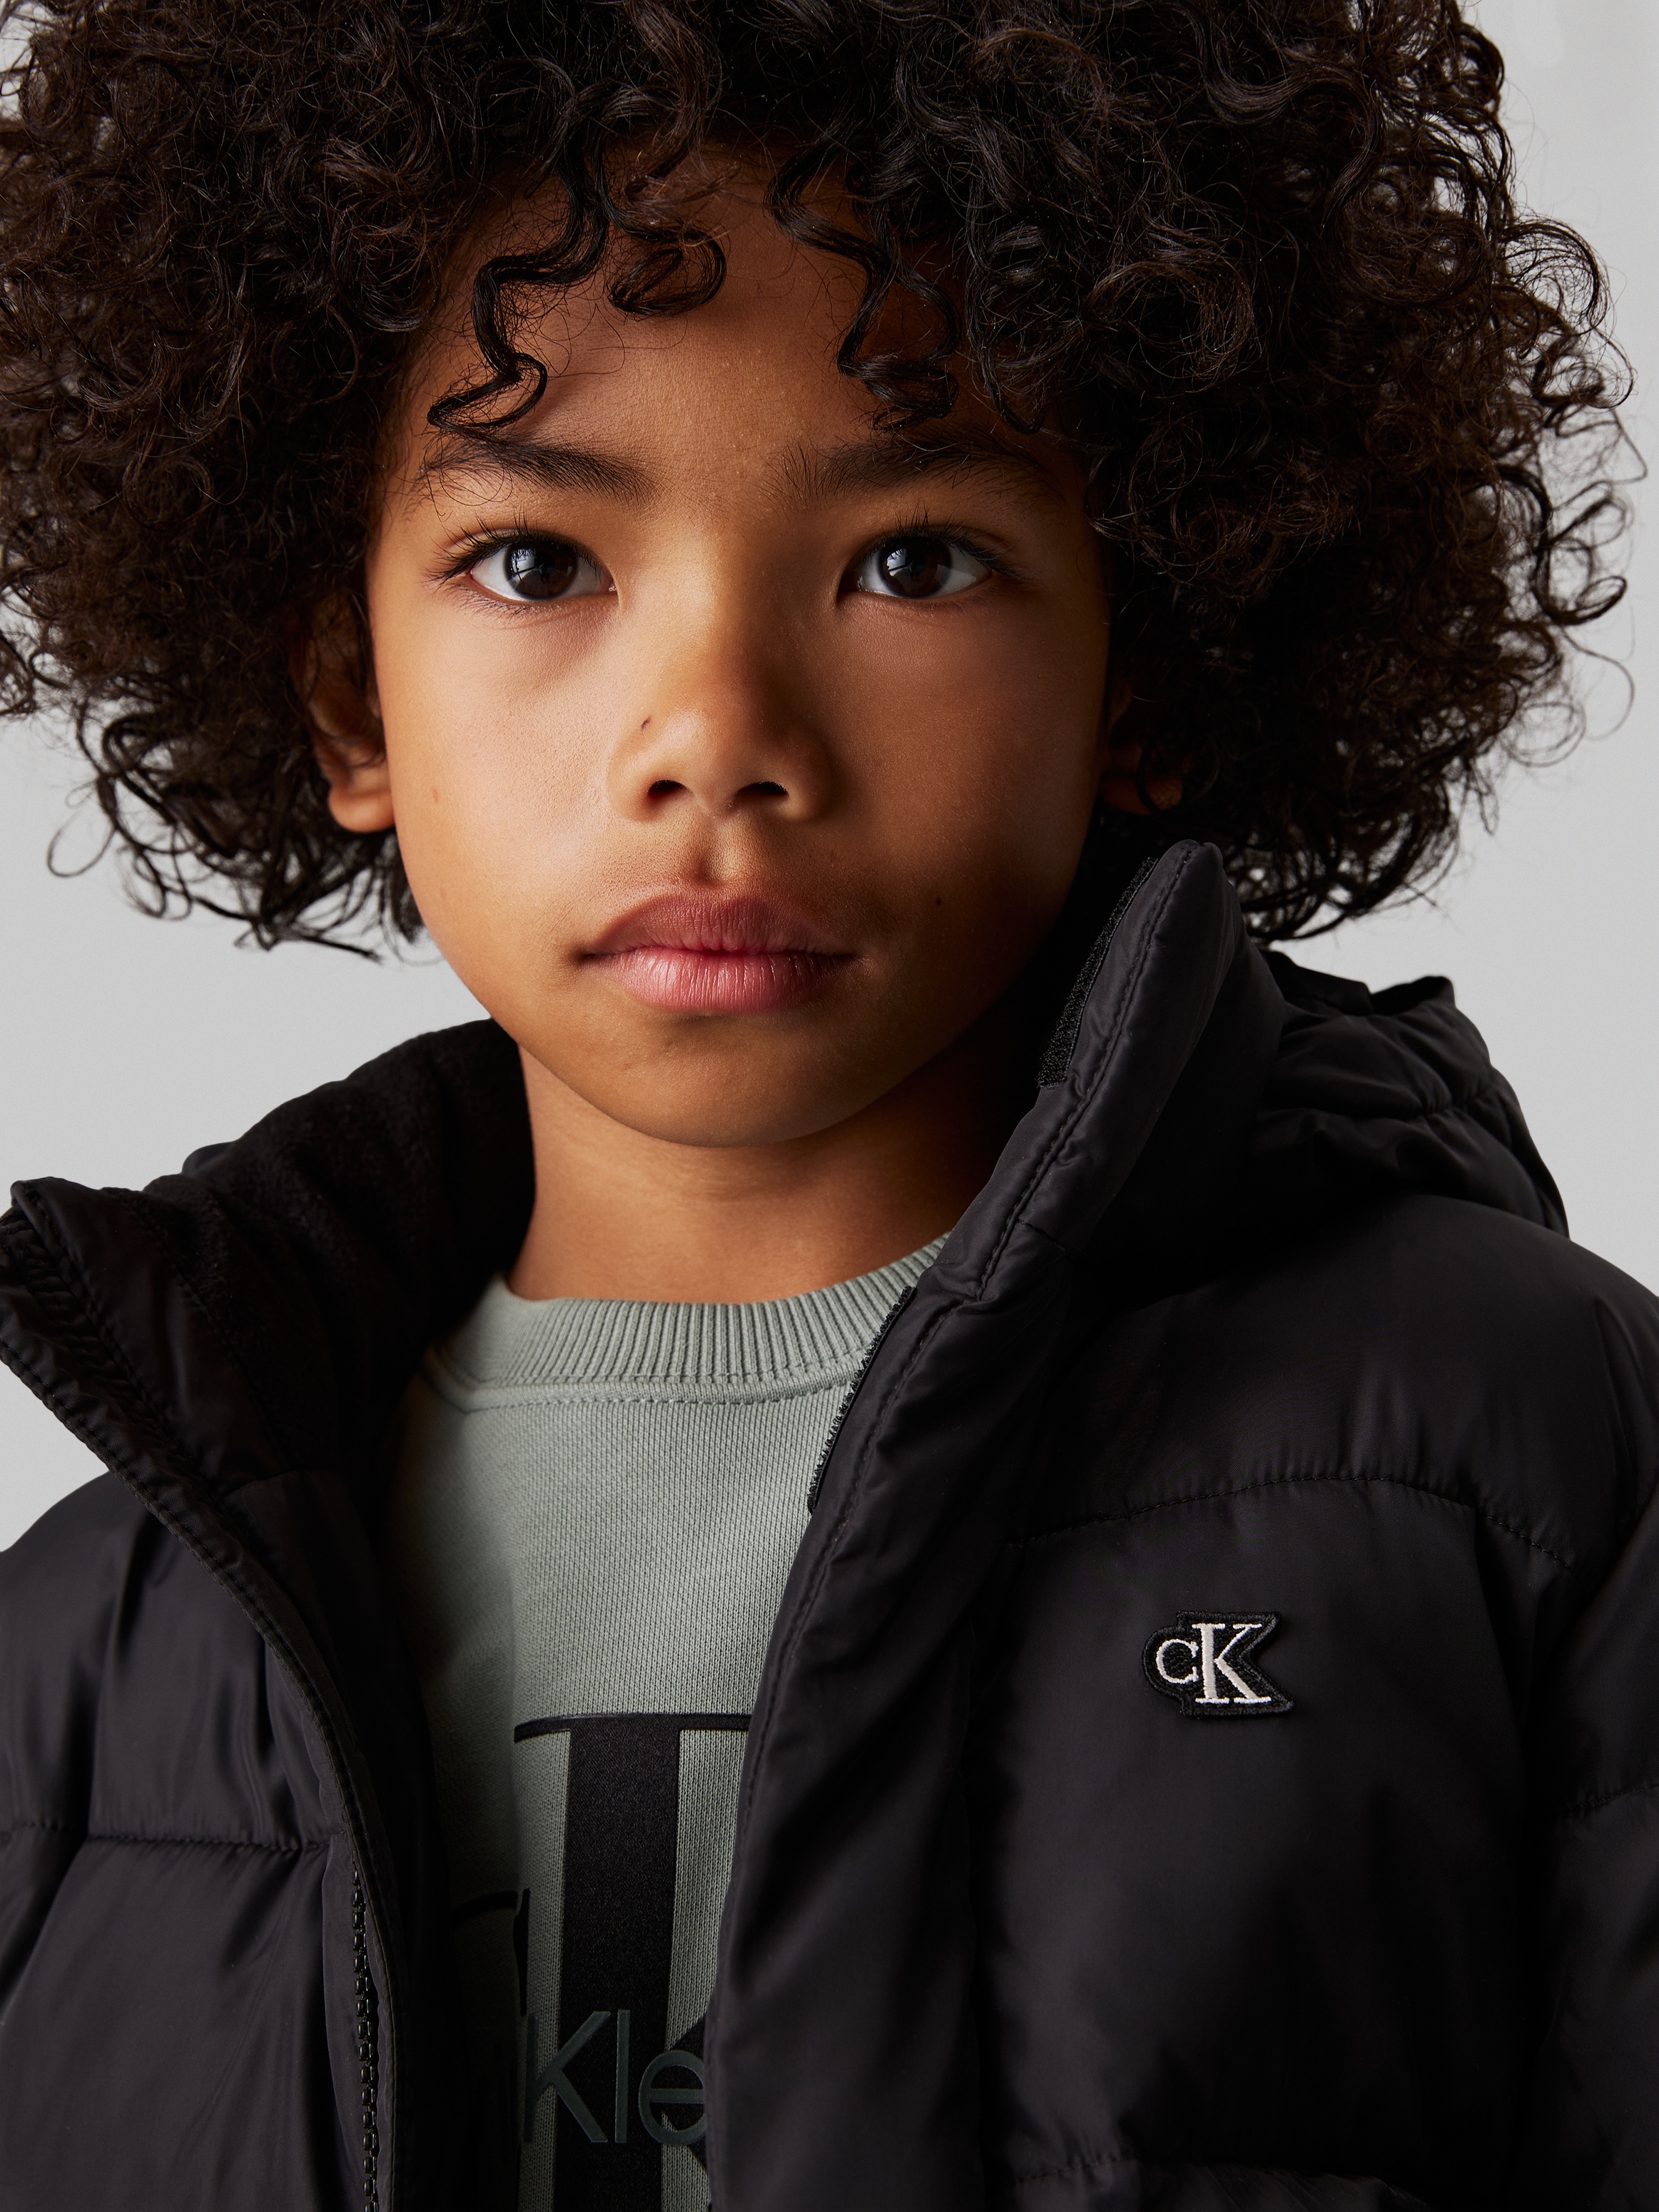 Calvin Klein Jeans Winterjacke »ESSENTIAL PUFFER JACKET«, mit Kapuze, für Kinder bis 16 Jahre und Calvin Klein Markenlabel